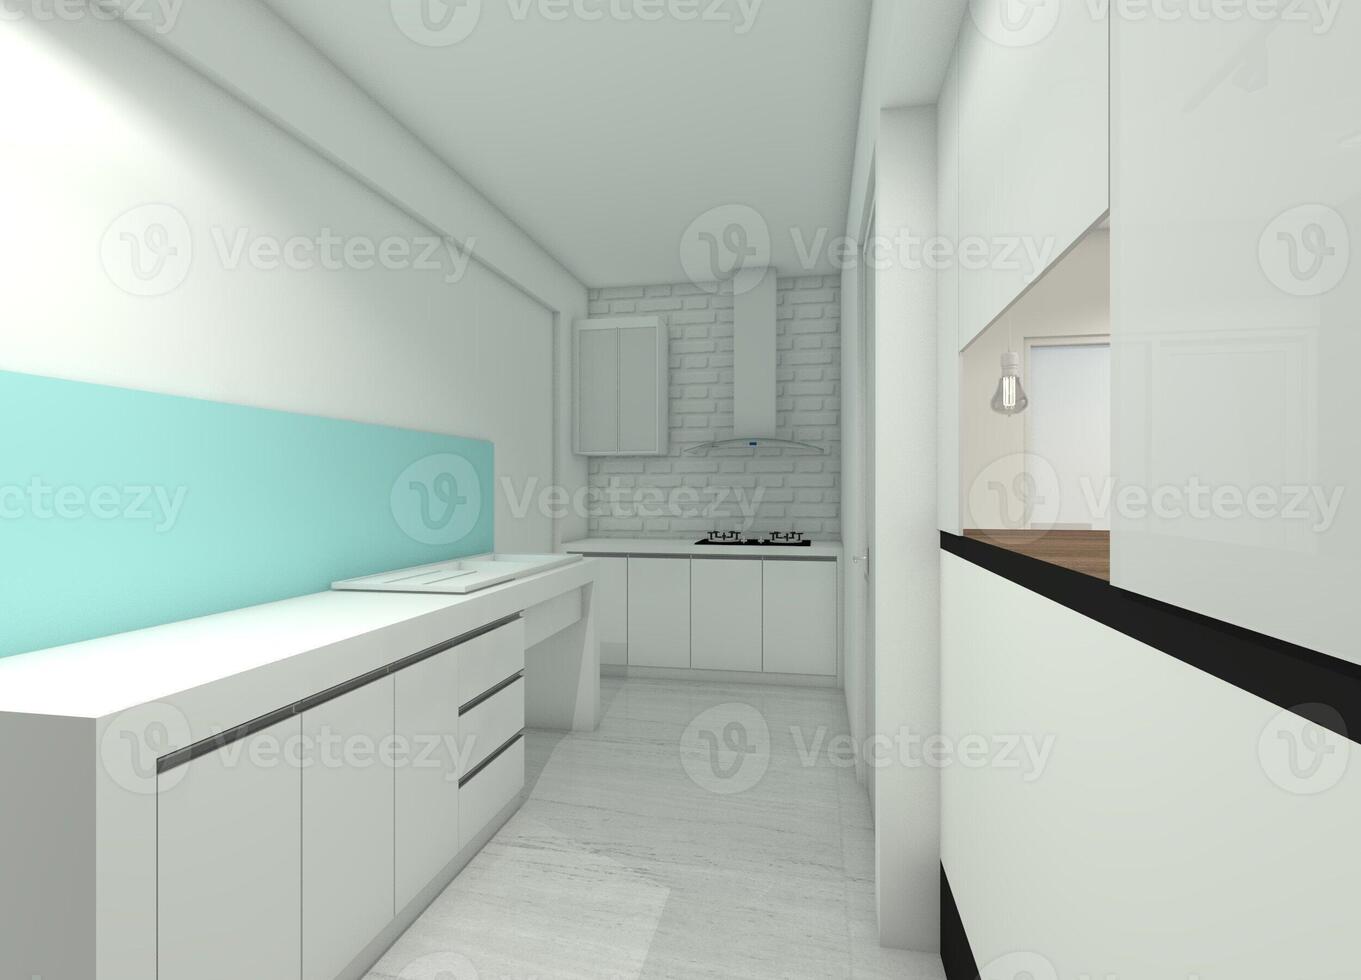 minimalistisk kök begrepp utan material inredning, 3d illustration foto